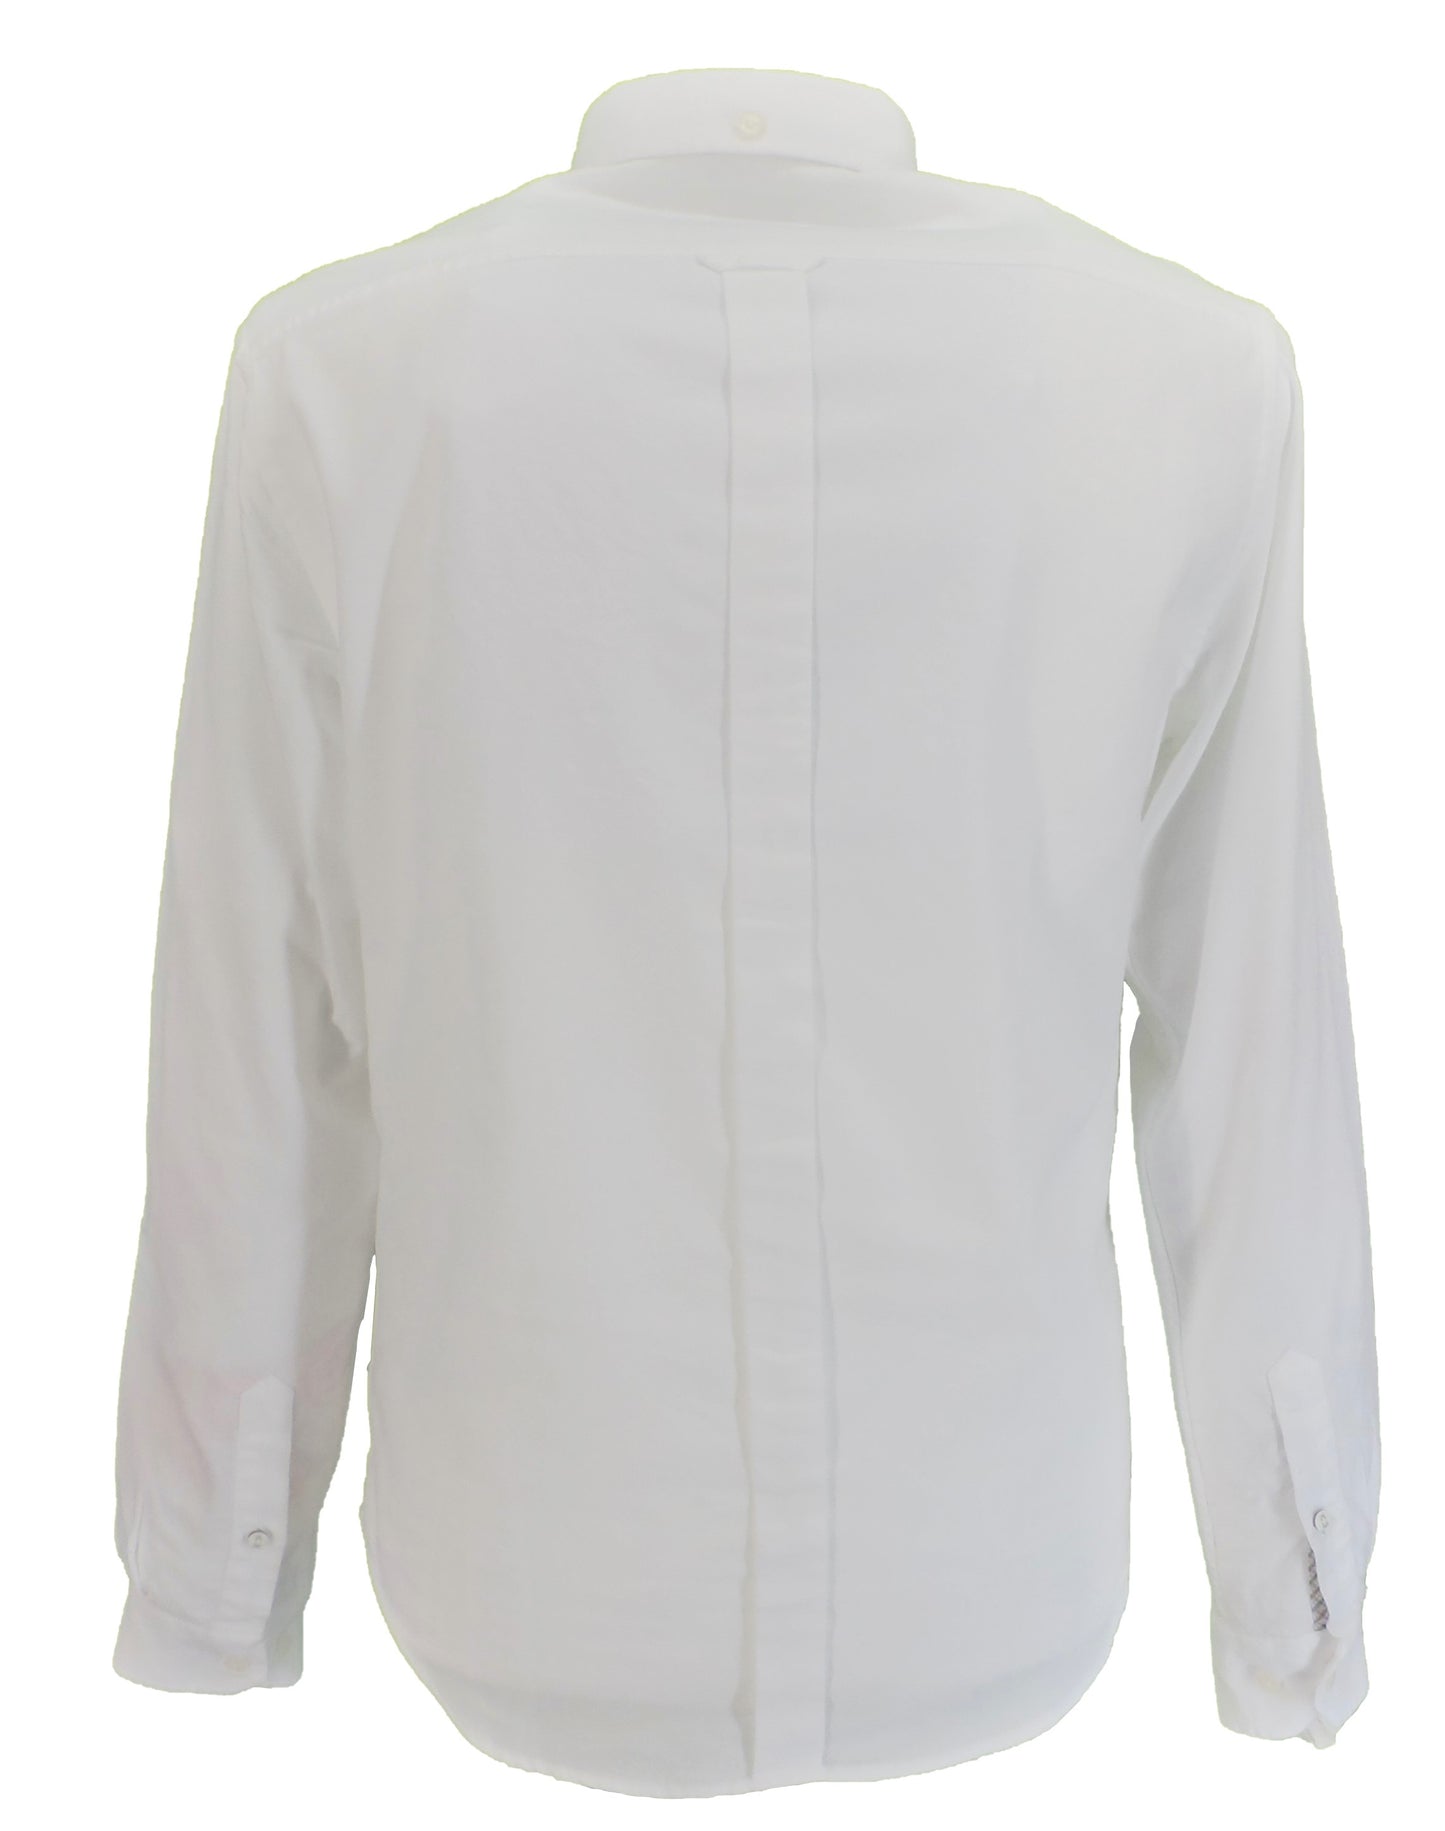 Camisas Oxford blancas de manga larga Ben Sherman